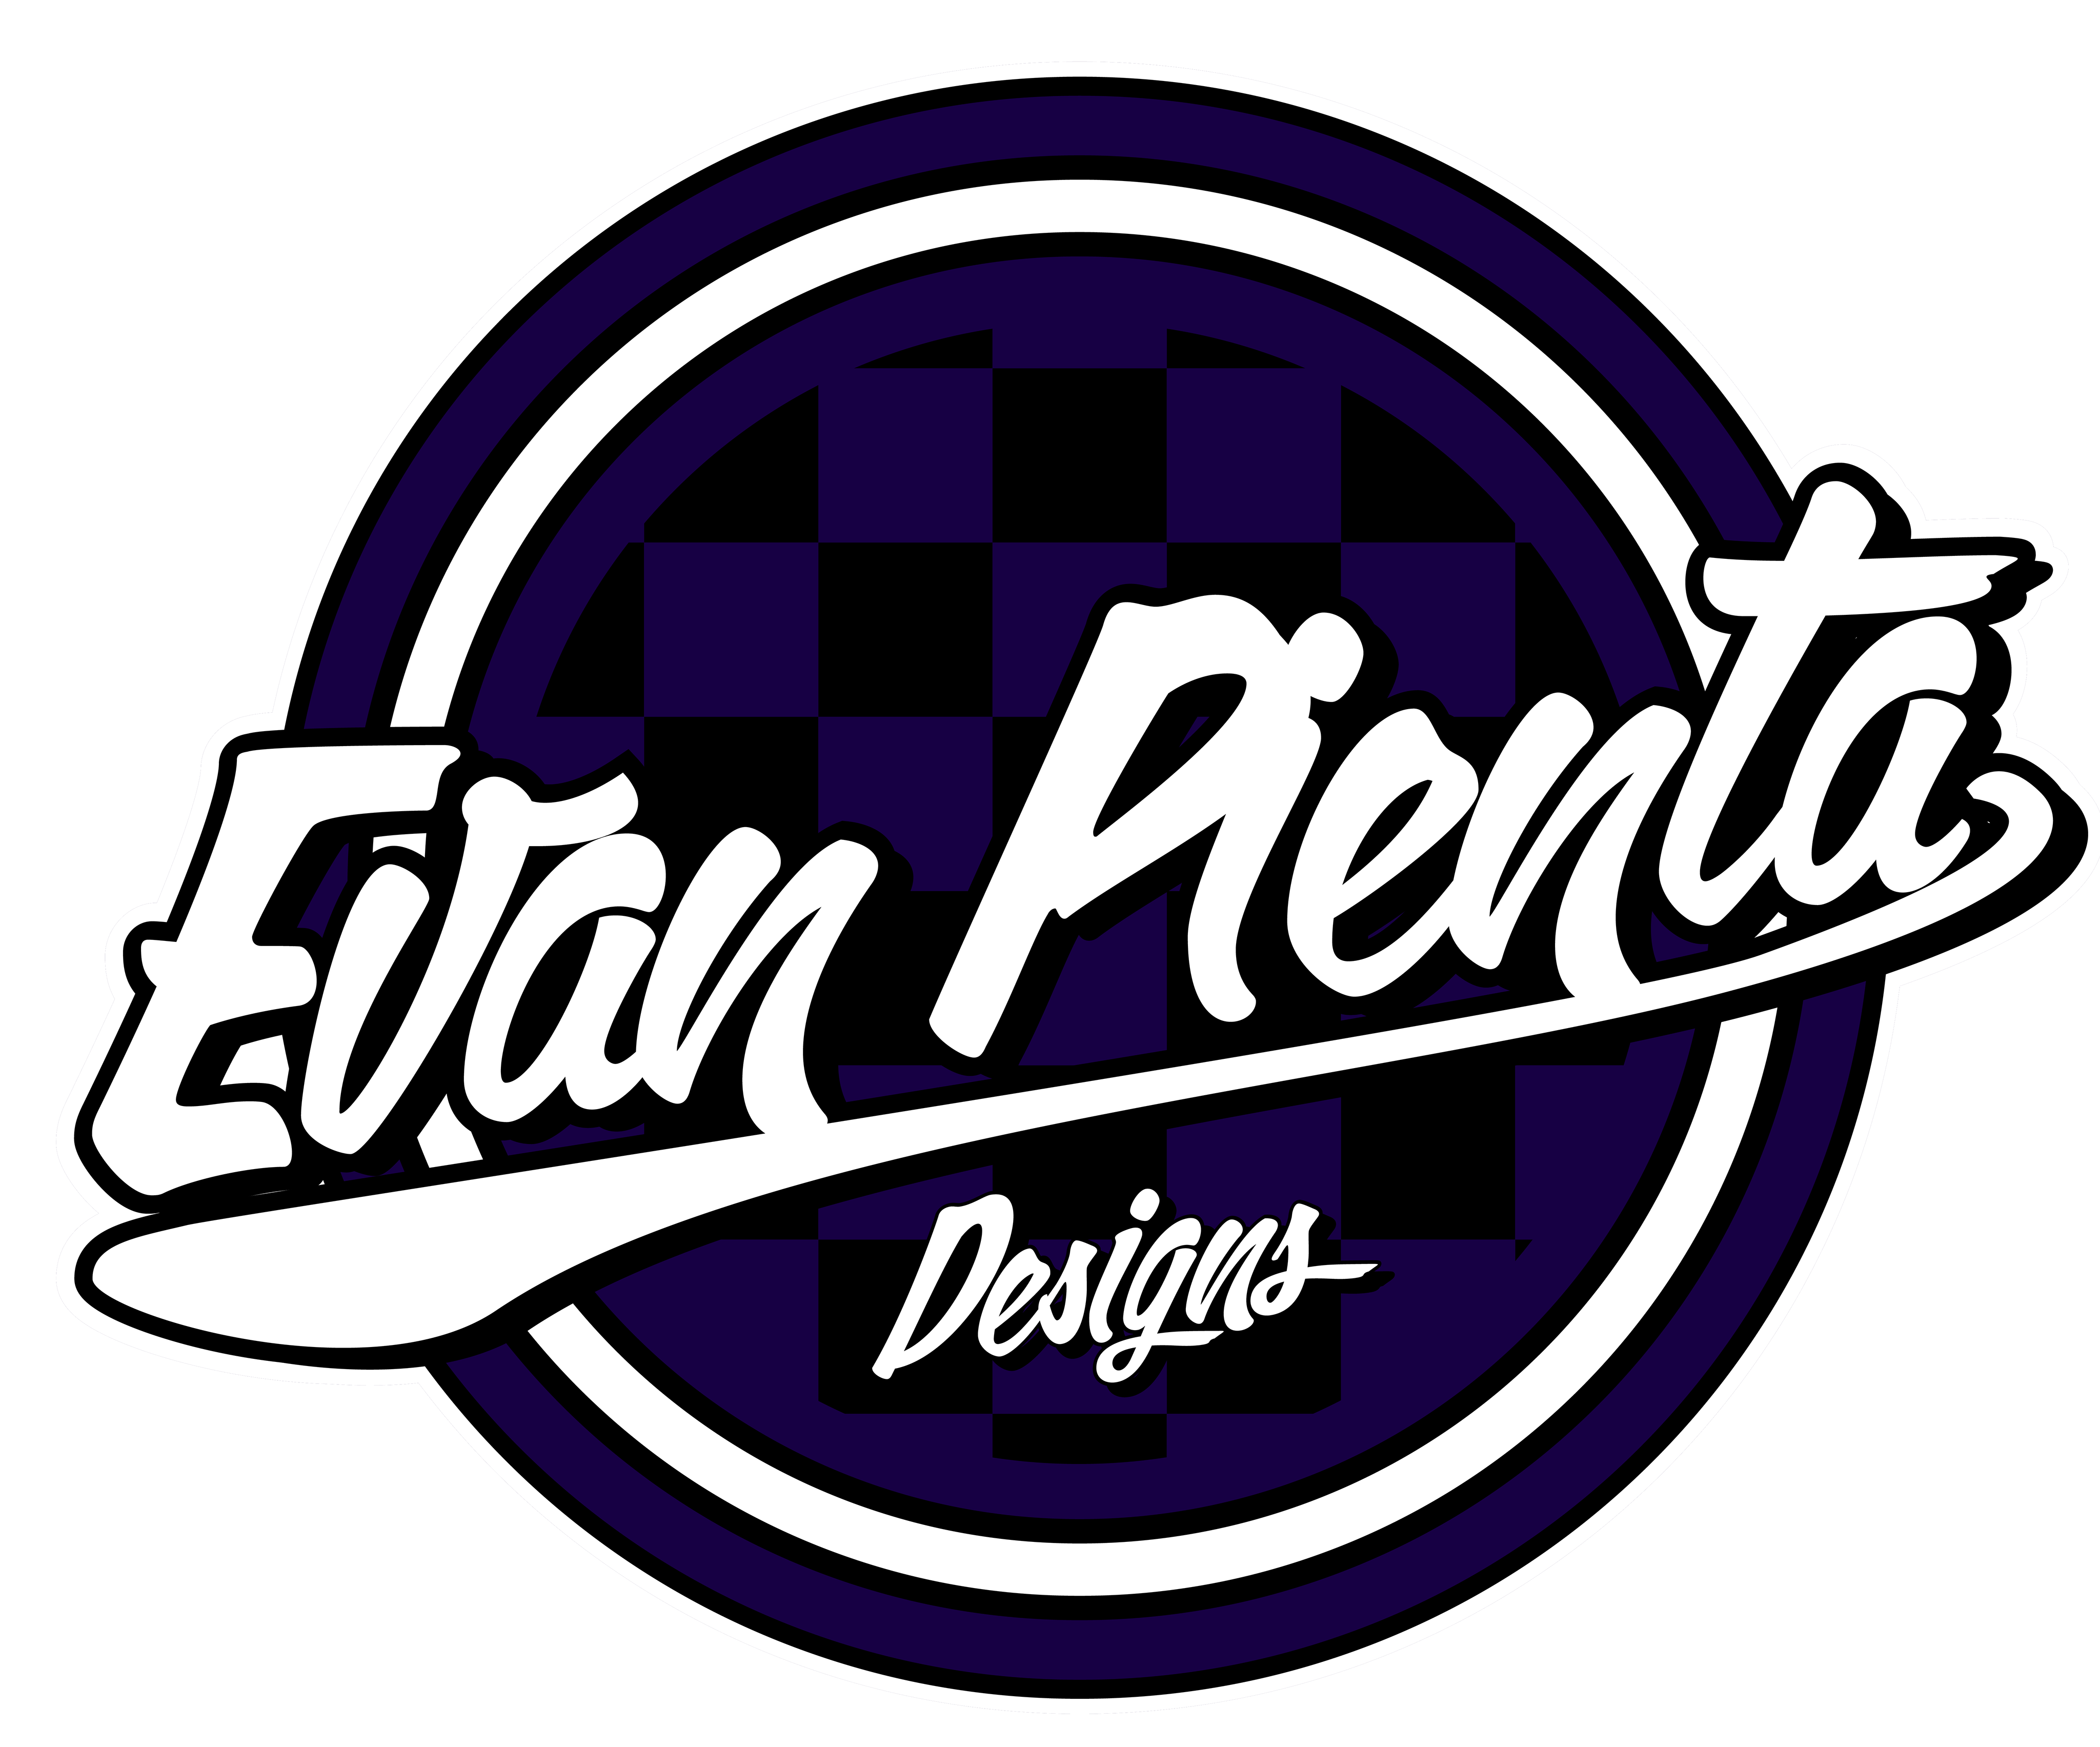 Evan Pienta Designs